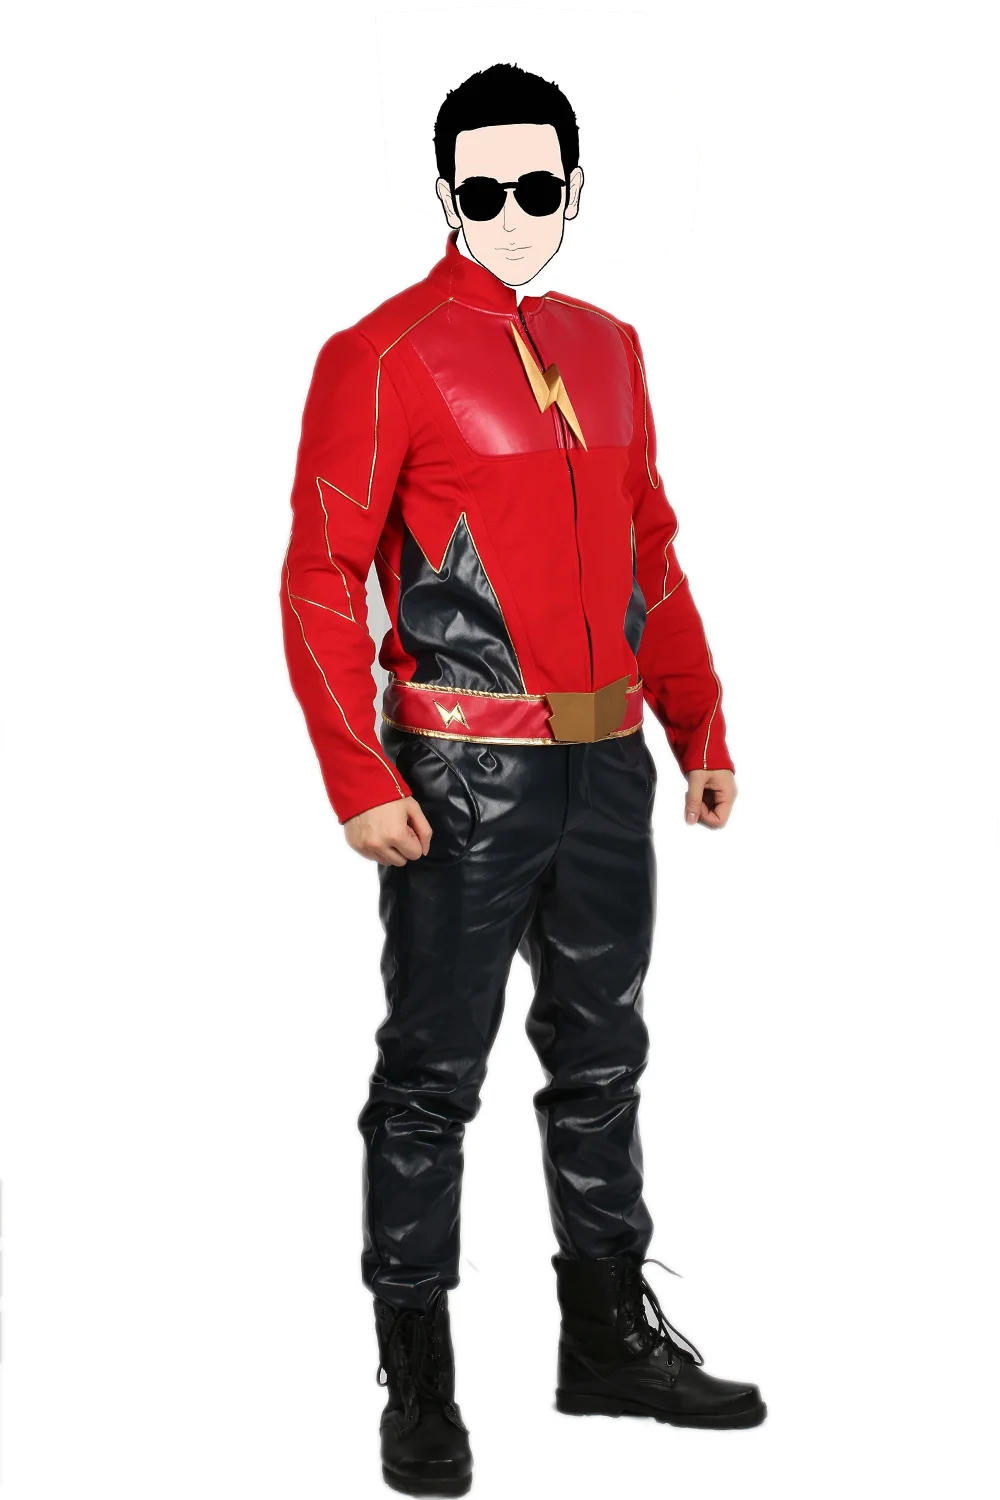 X-COSTUME распродажа 45% скидка флэш сезон 2 Джей костюм garrick для косплея и Хэллоуина подарок для фанатов высокого качества